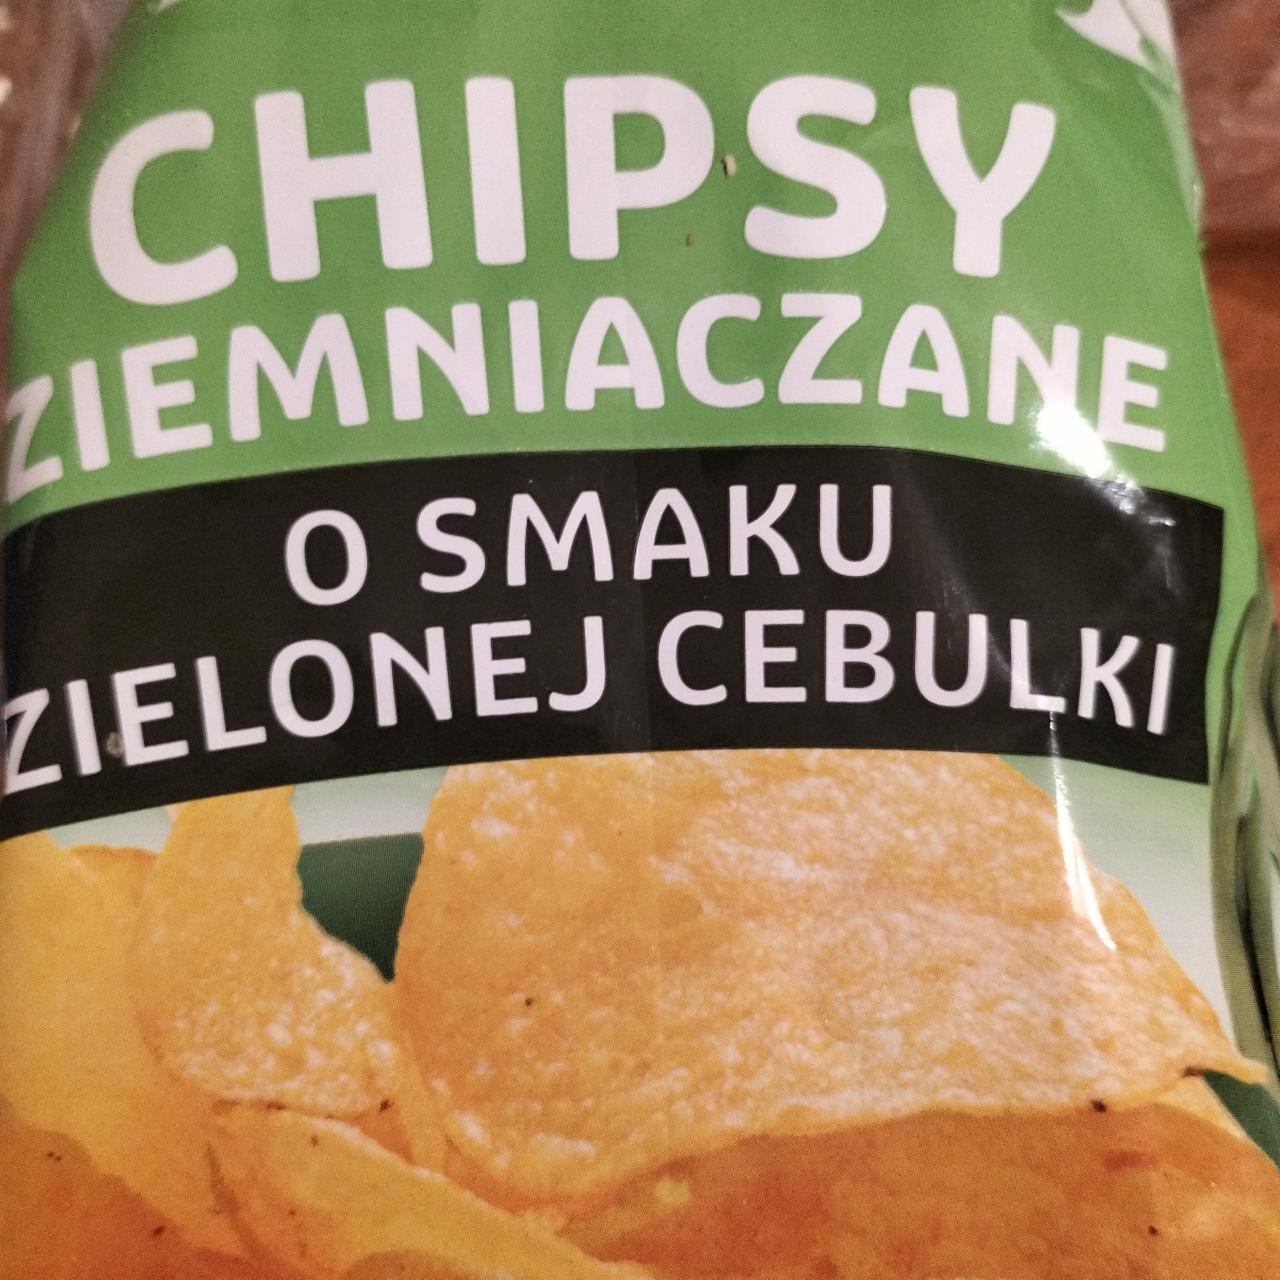 Zdjęcia - Chipsy ziemniaczane o smaku zielonej cebulki Carrefour